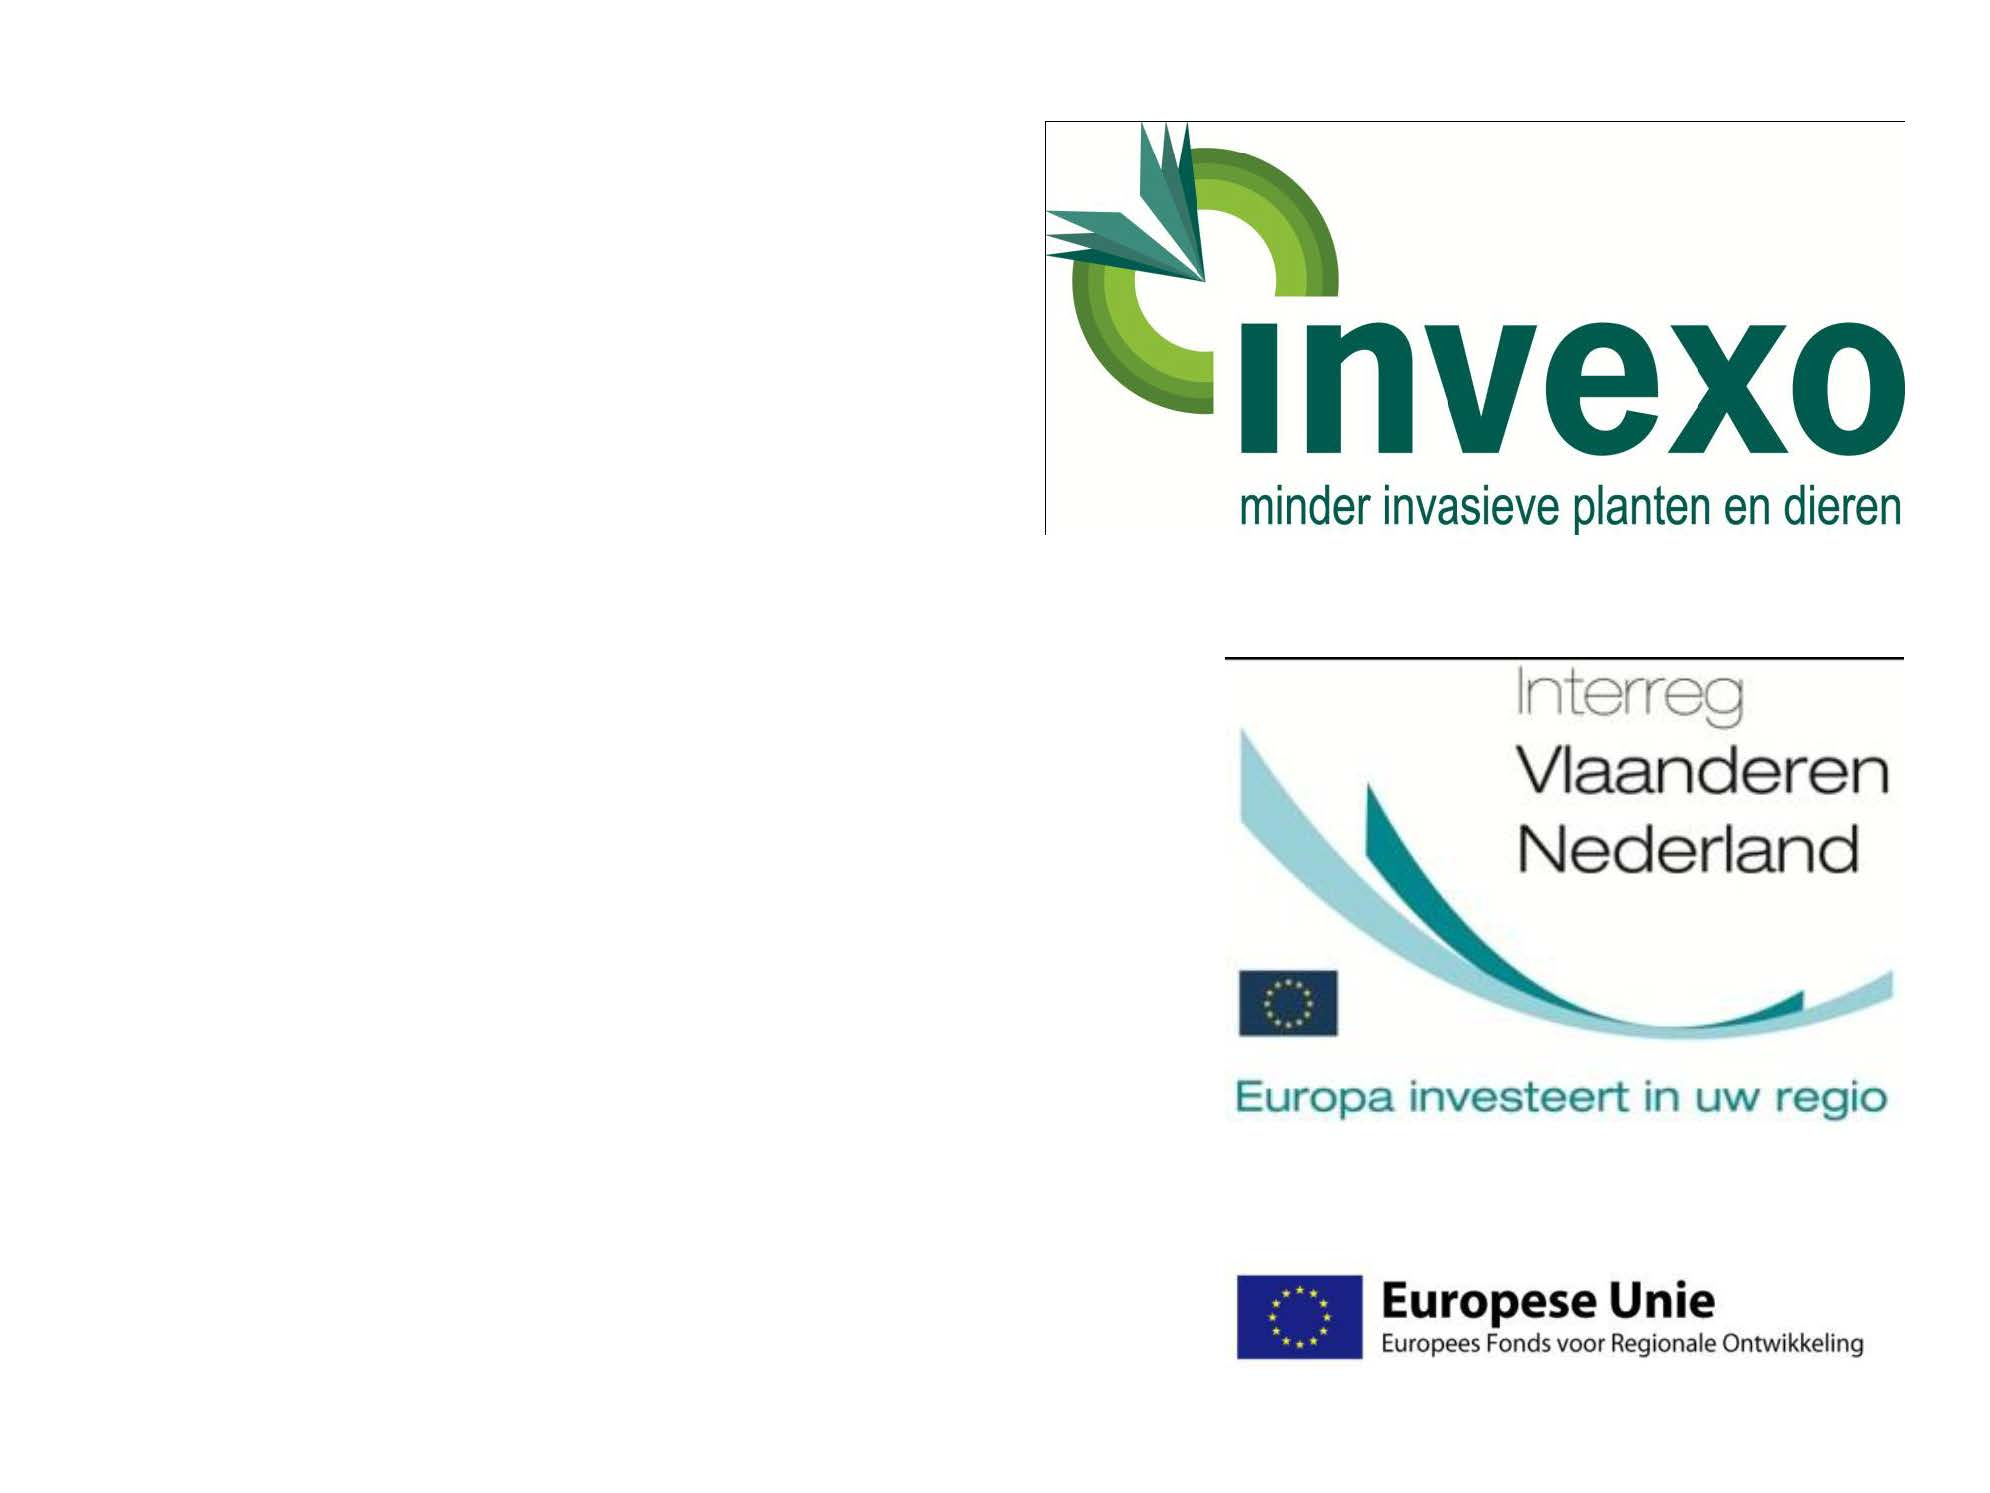 1nveo minder invasieve planten en dieren Interreg Vlaanderen Nederland Europa